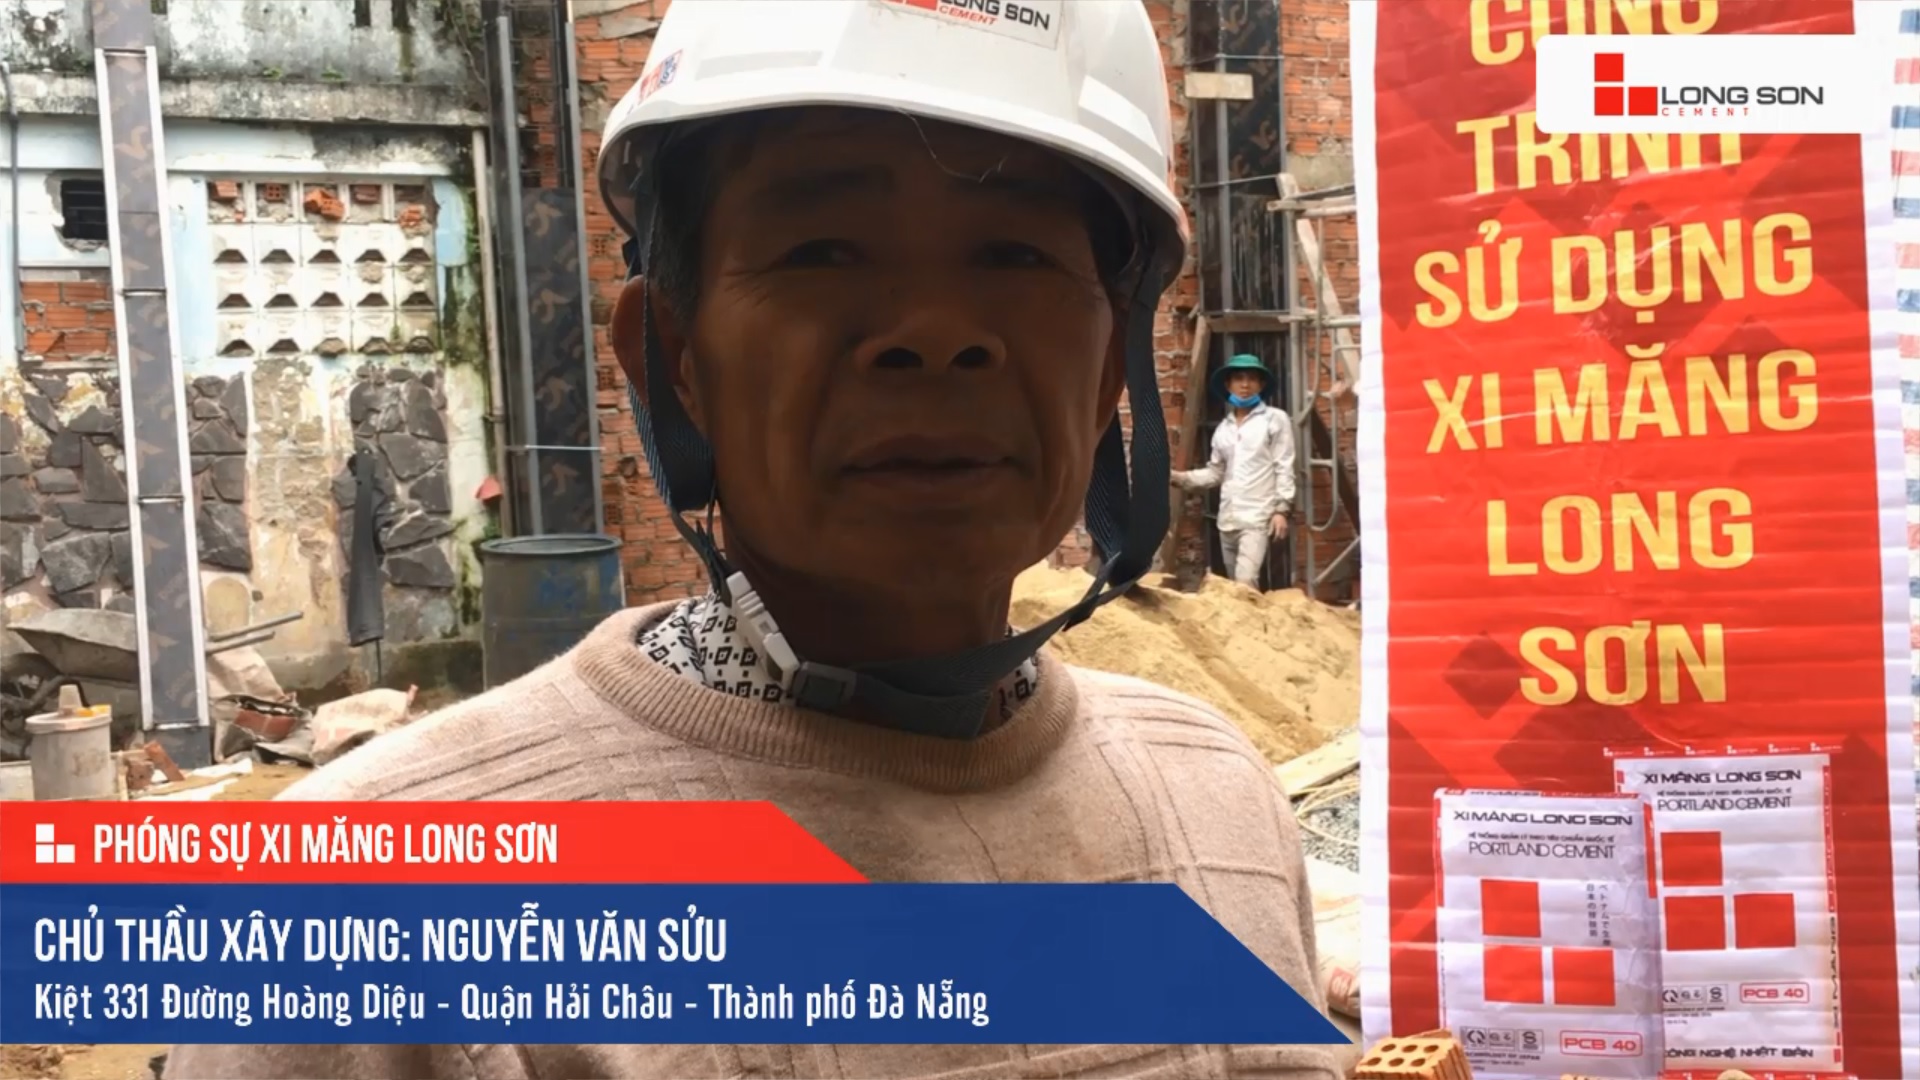 Phóng sự công trình sử dụng Xi măng Long Sơn tại Đà Nẵng 19.12.2020